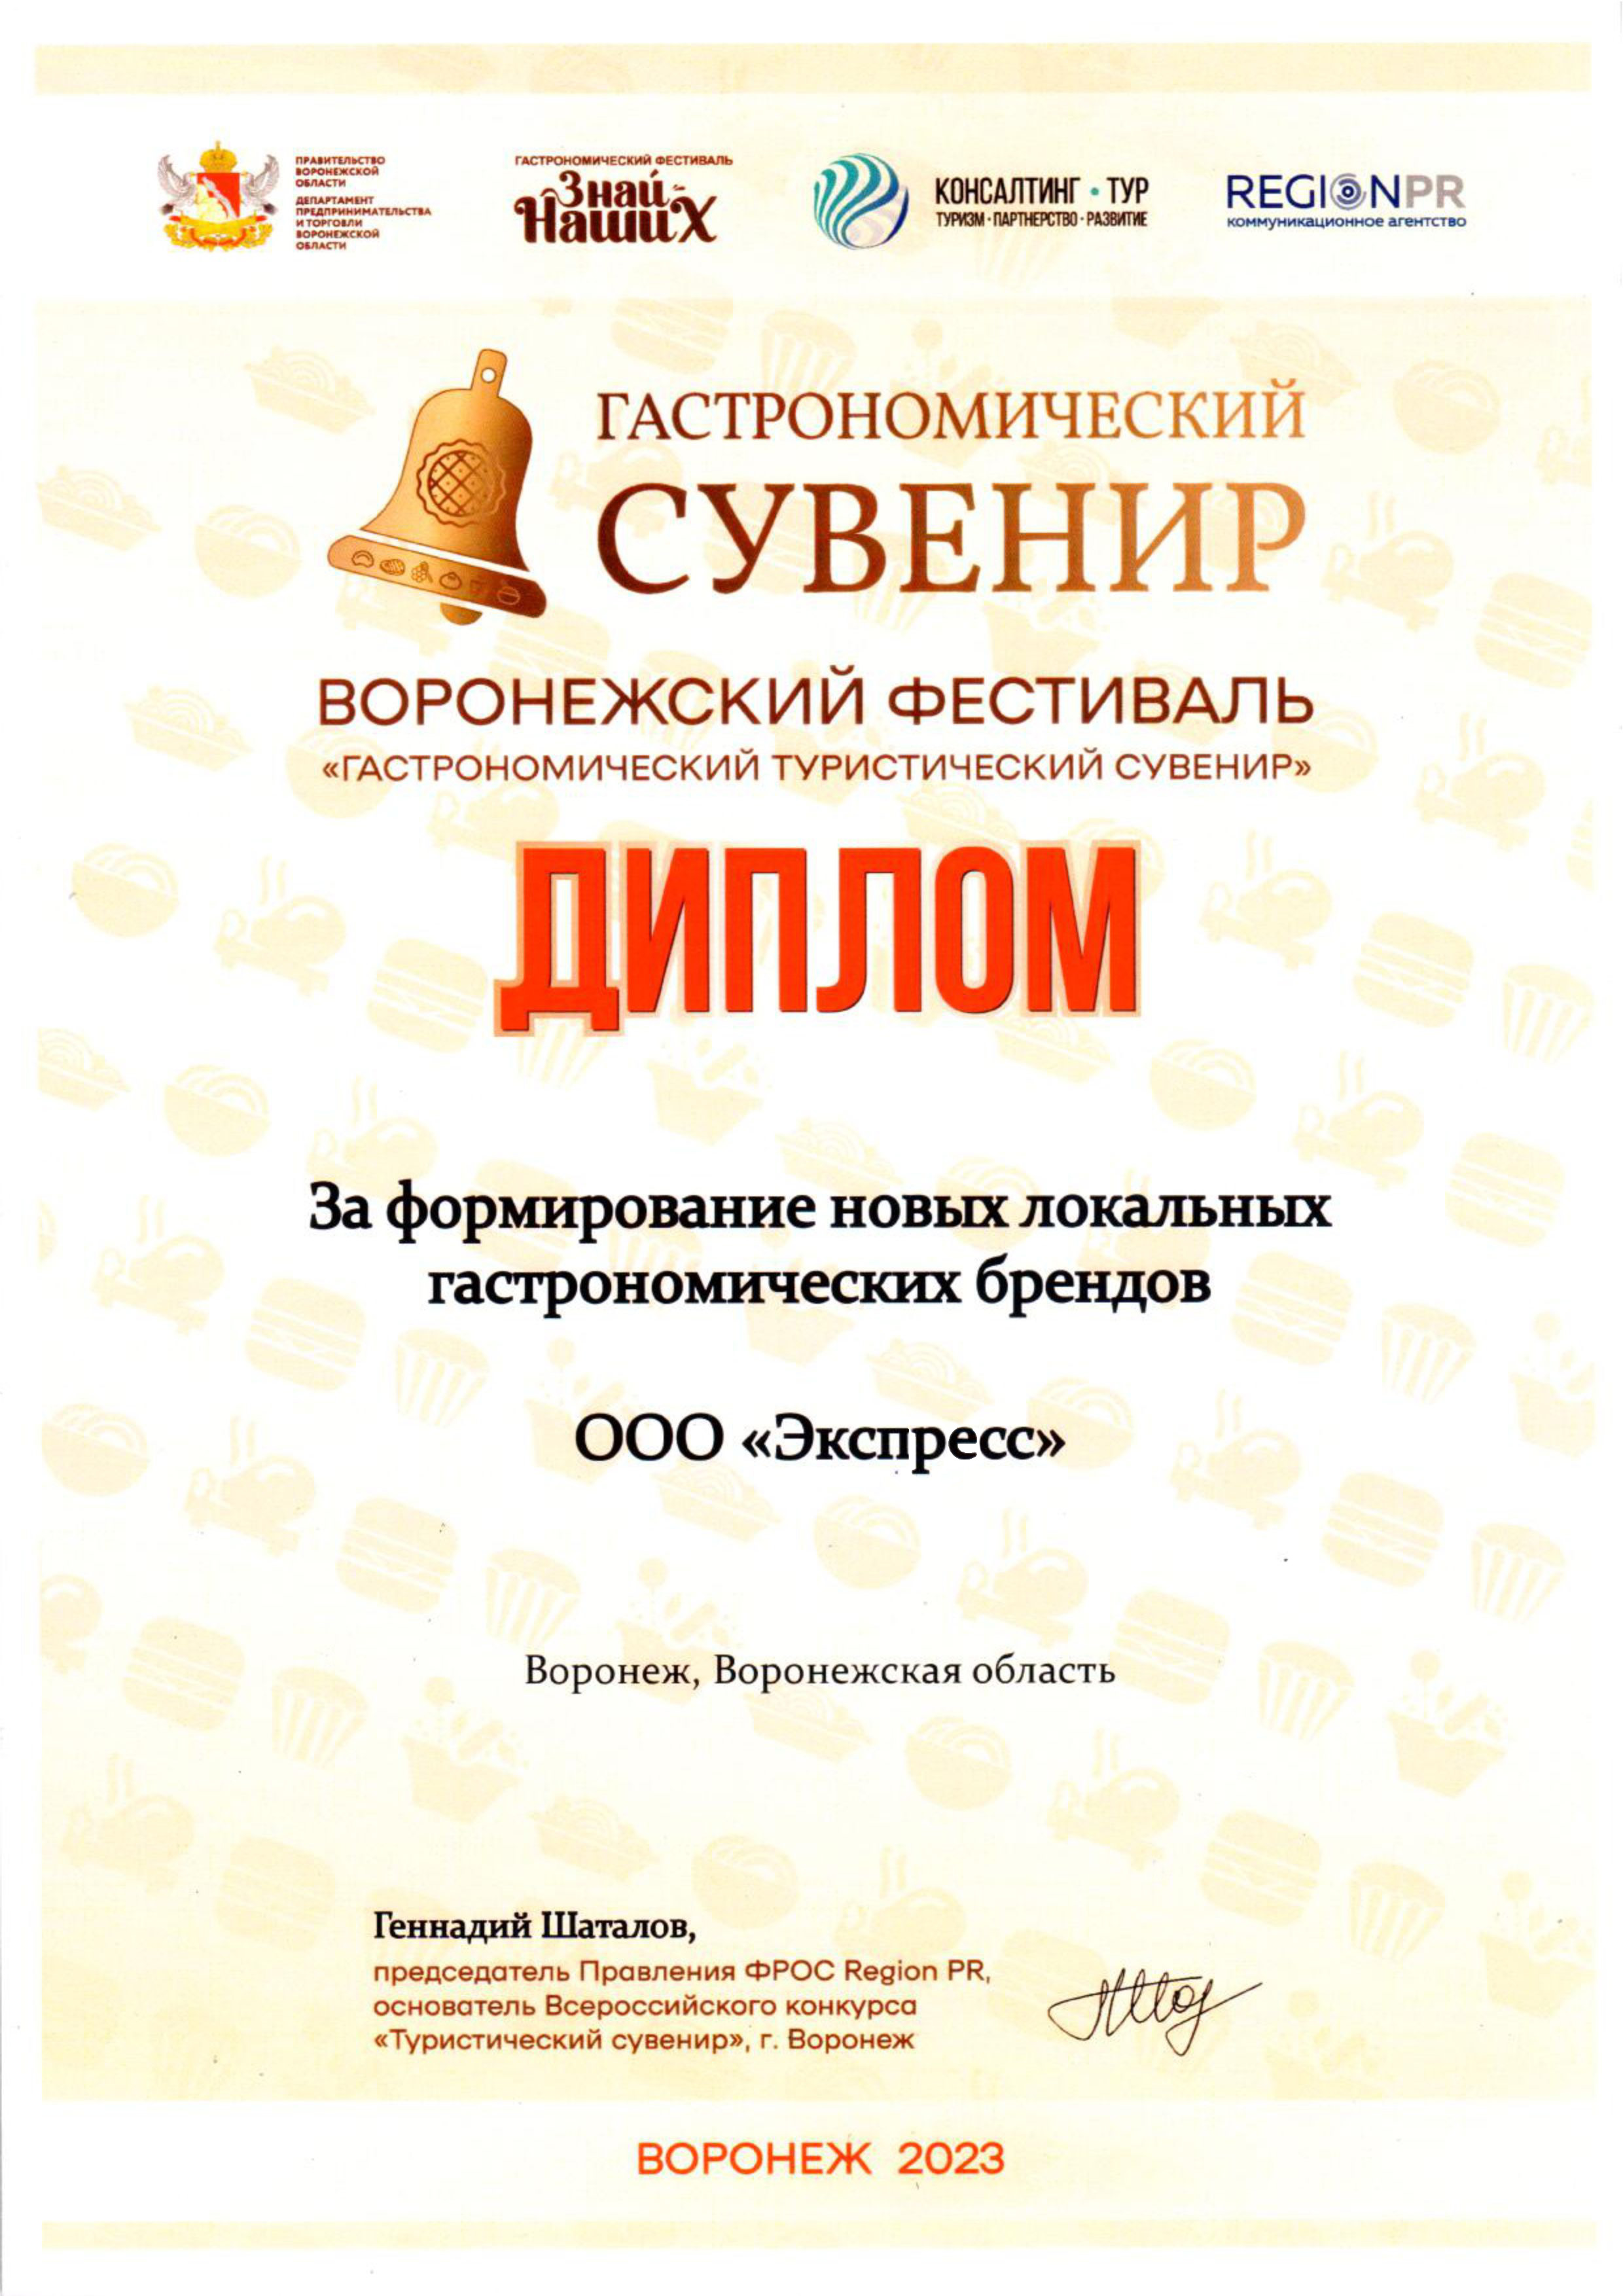 Диплом участника Воронежского фестиваля «Гастрономический туристический сувенир»